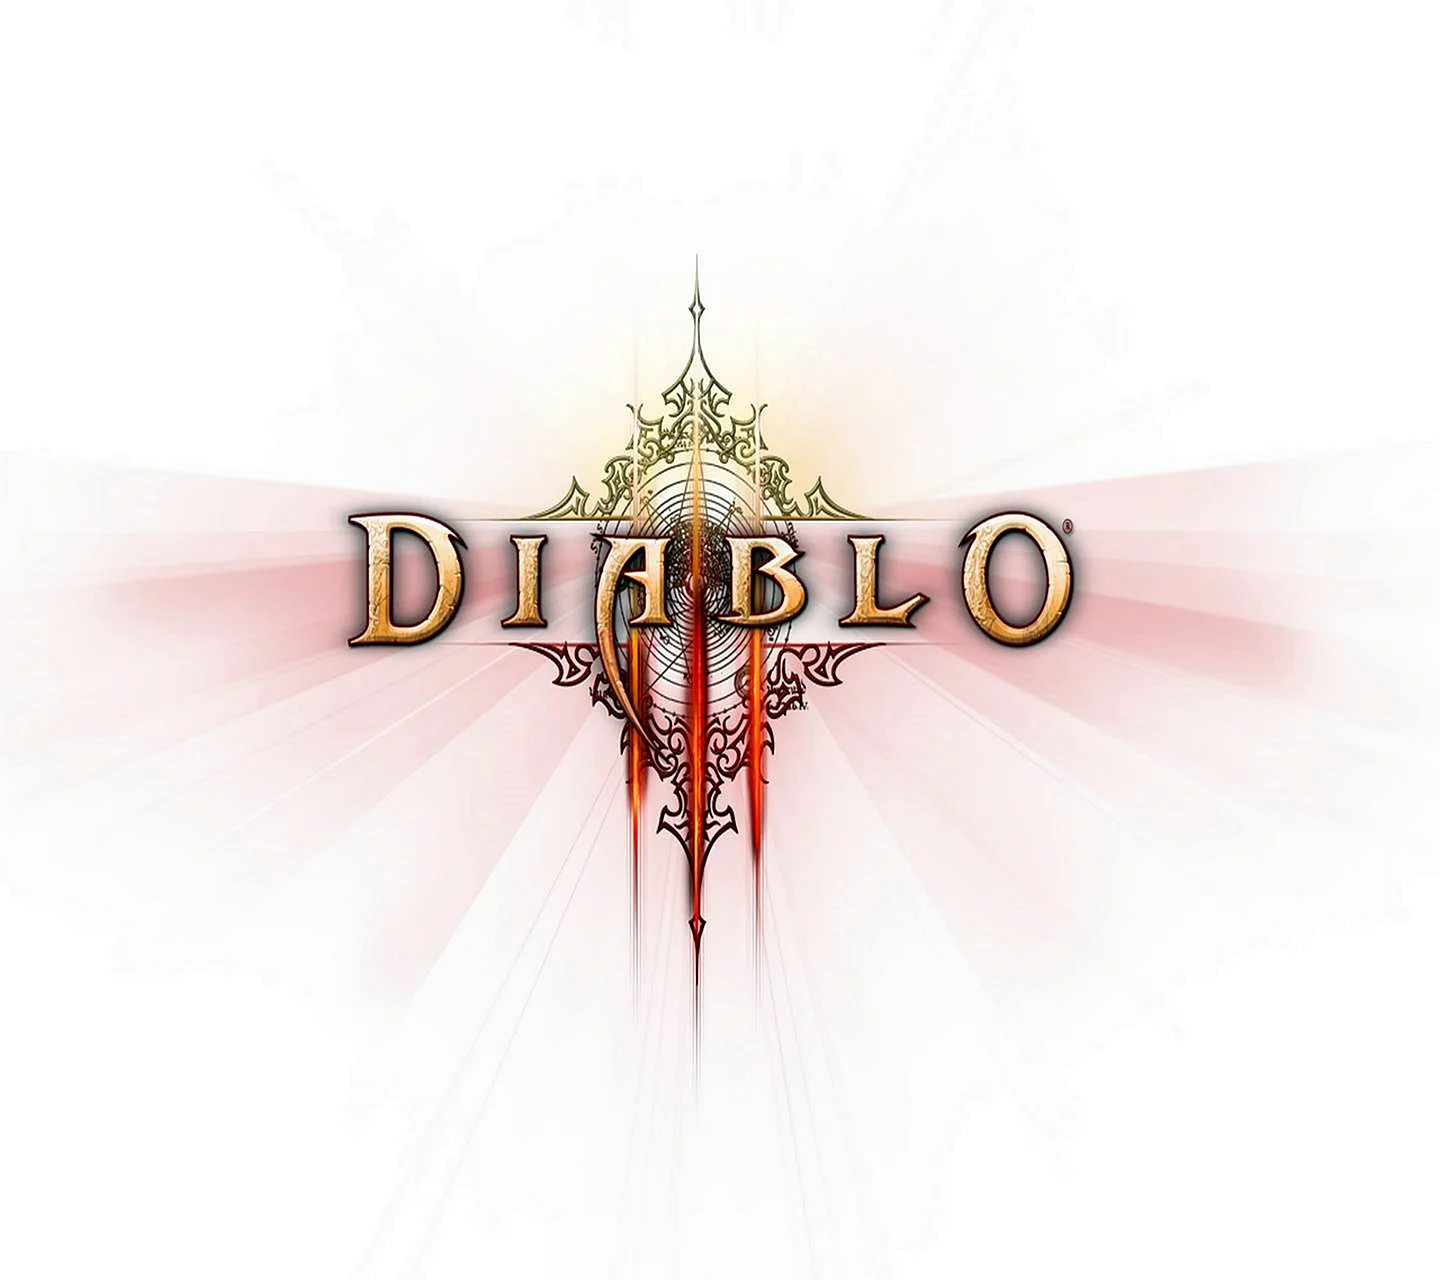 Diablo 3 логотип